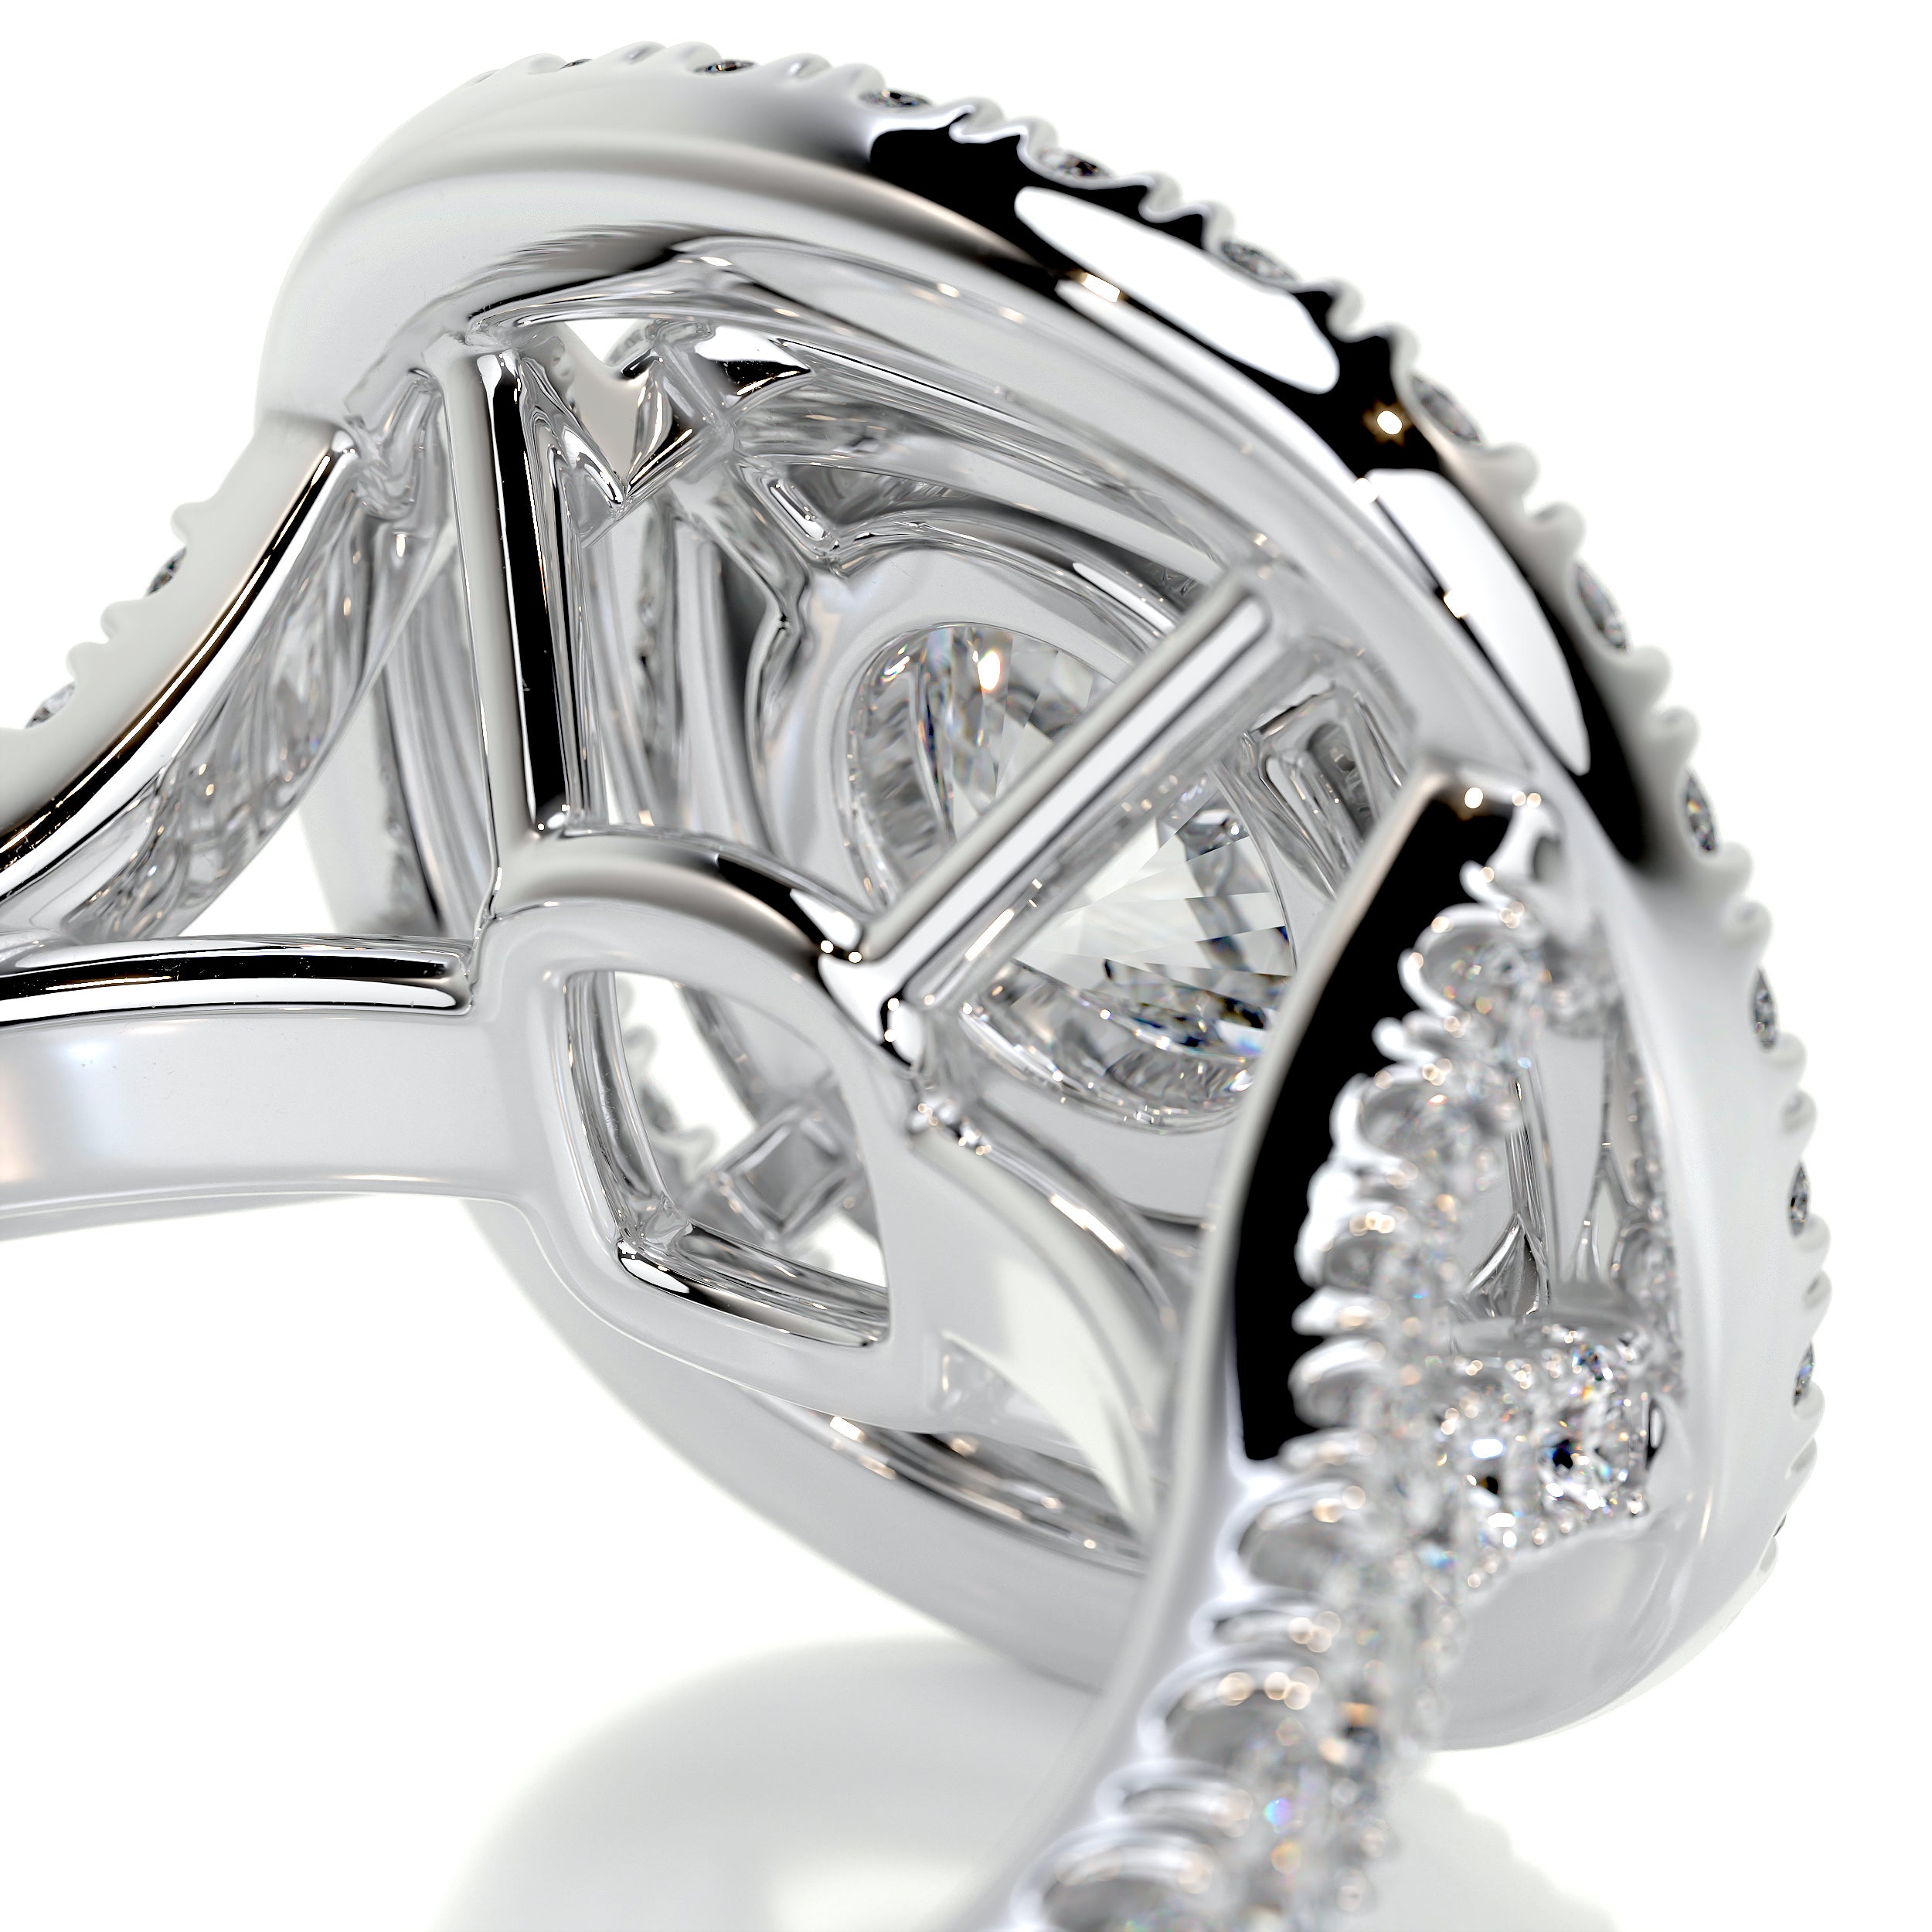 Natalie Diamond Engagement Ring -14K White Gold